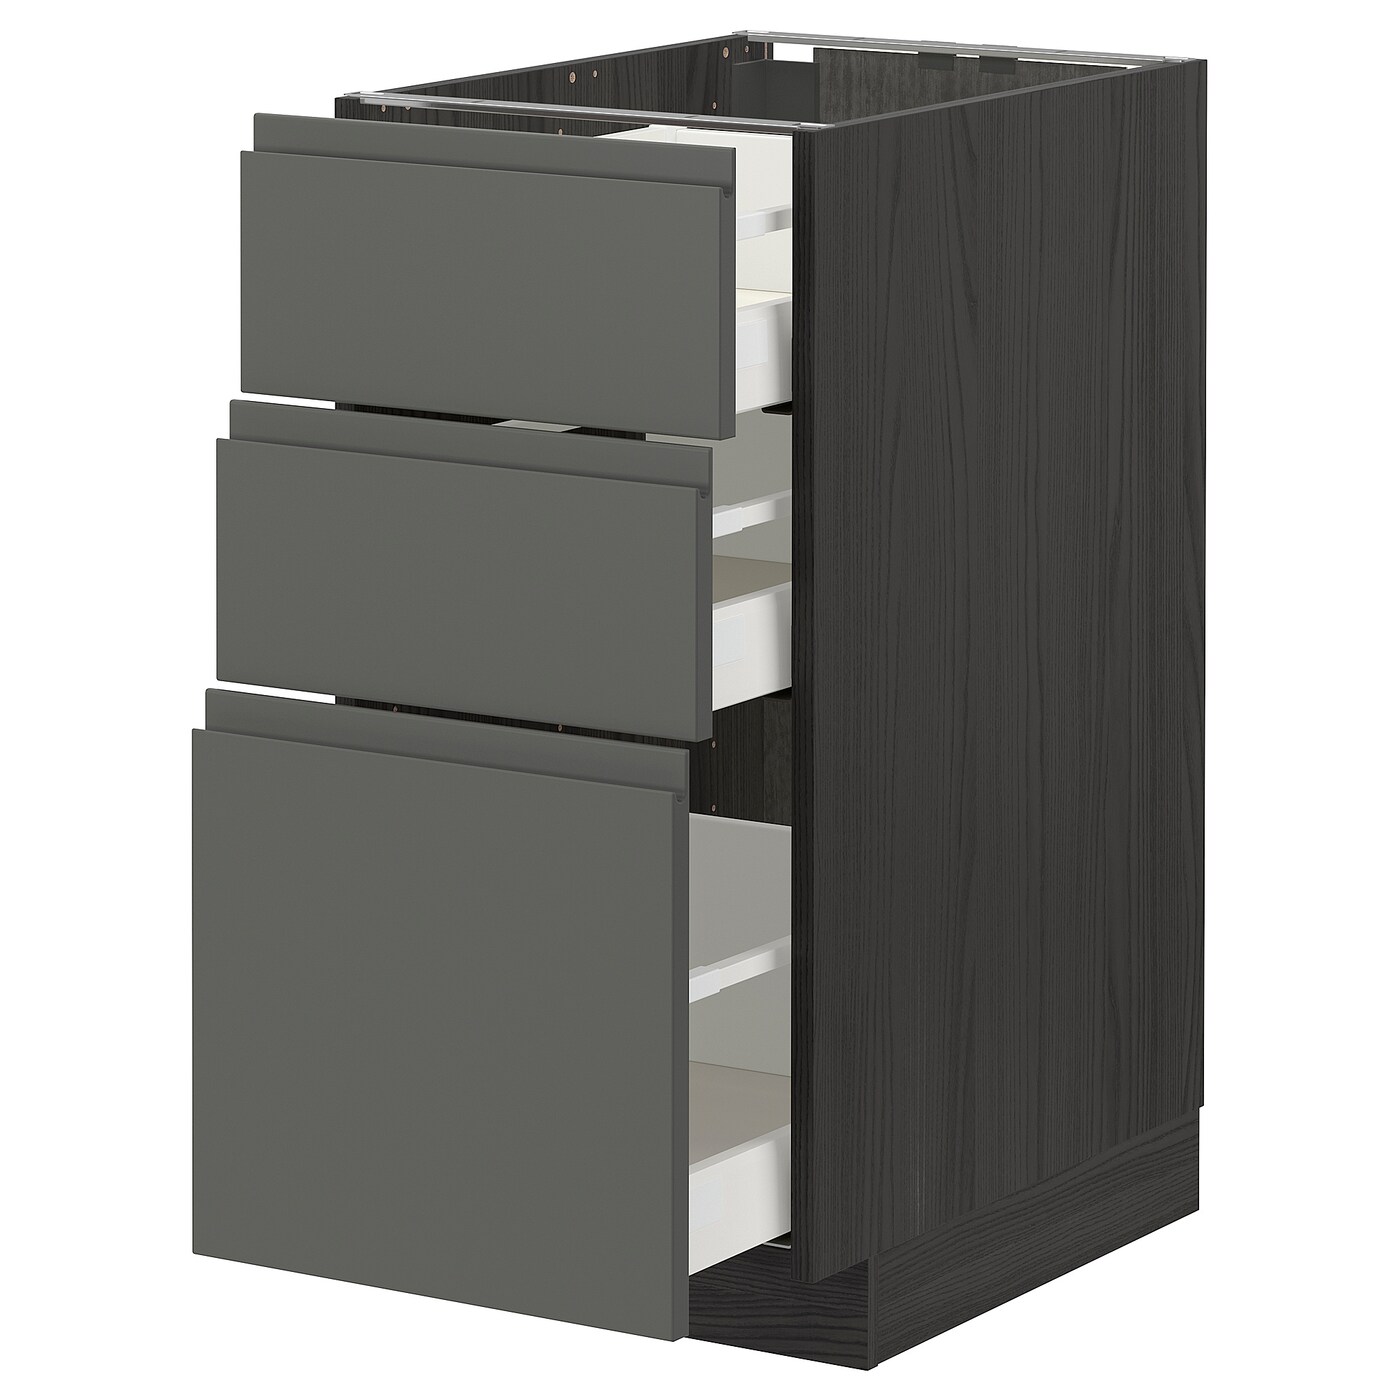 Напольный кухонный шкаф  - IKEA METOD MAXIMERA, 88x62x40см, серый/темно-серый, МЕТОД МАКСИМЕРА ИКЕА